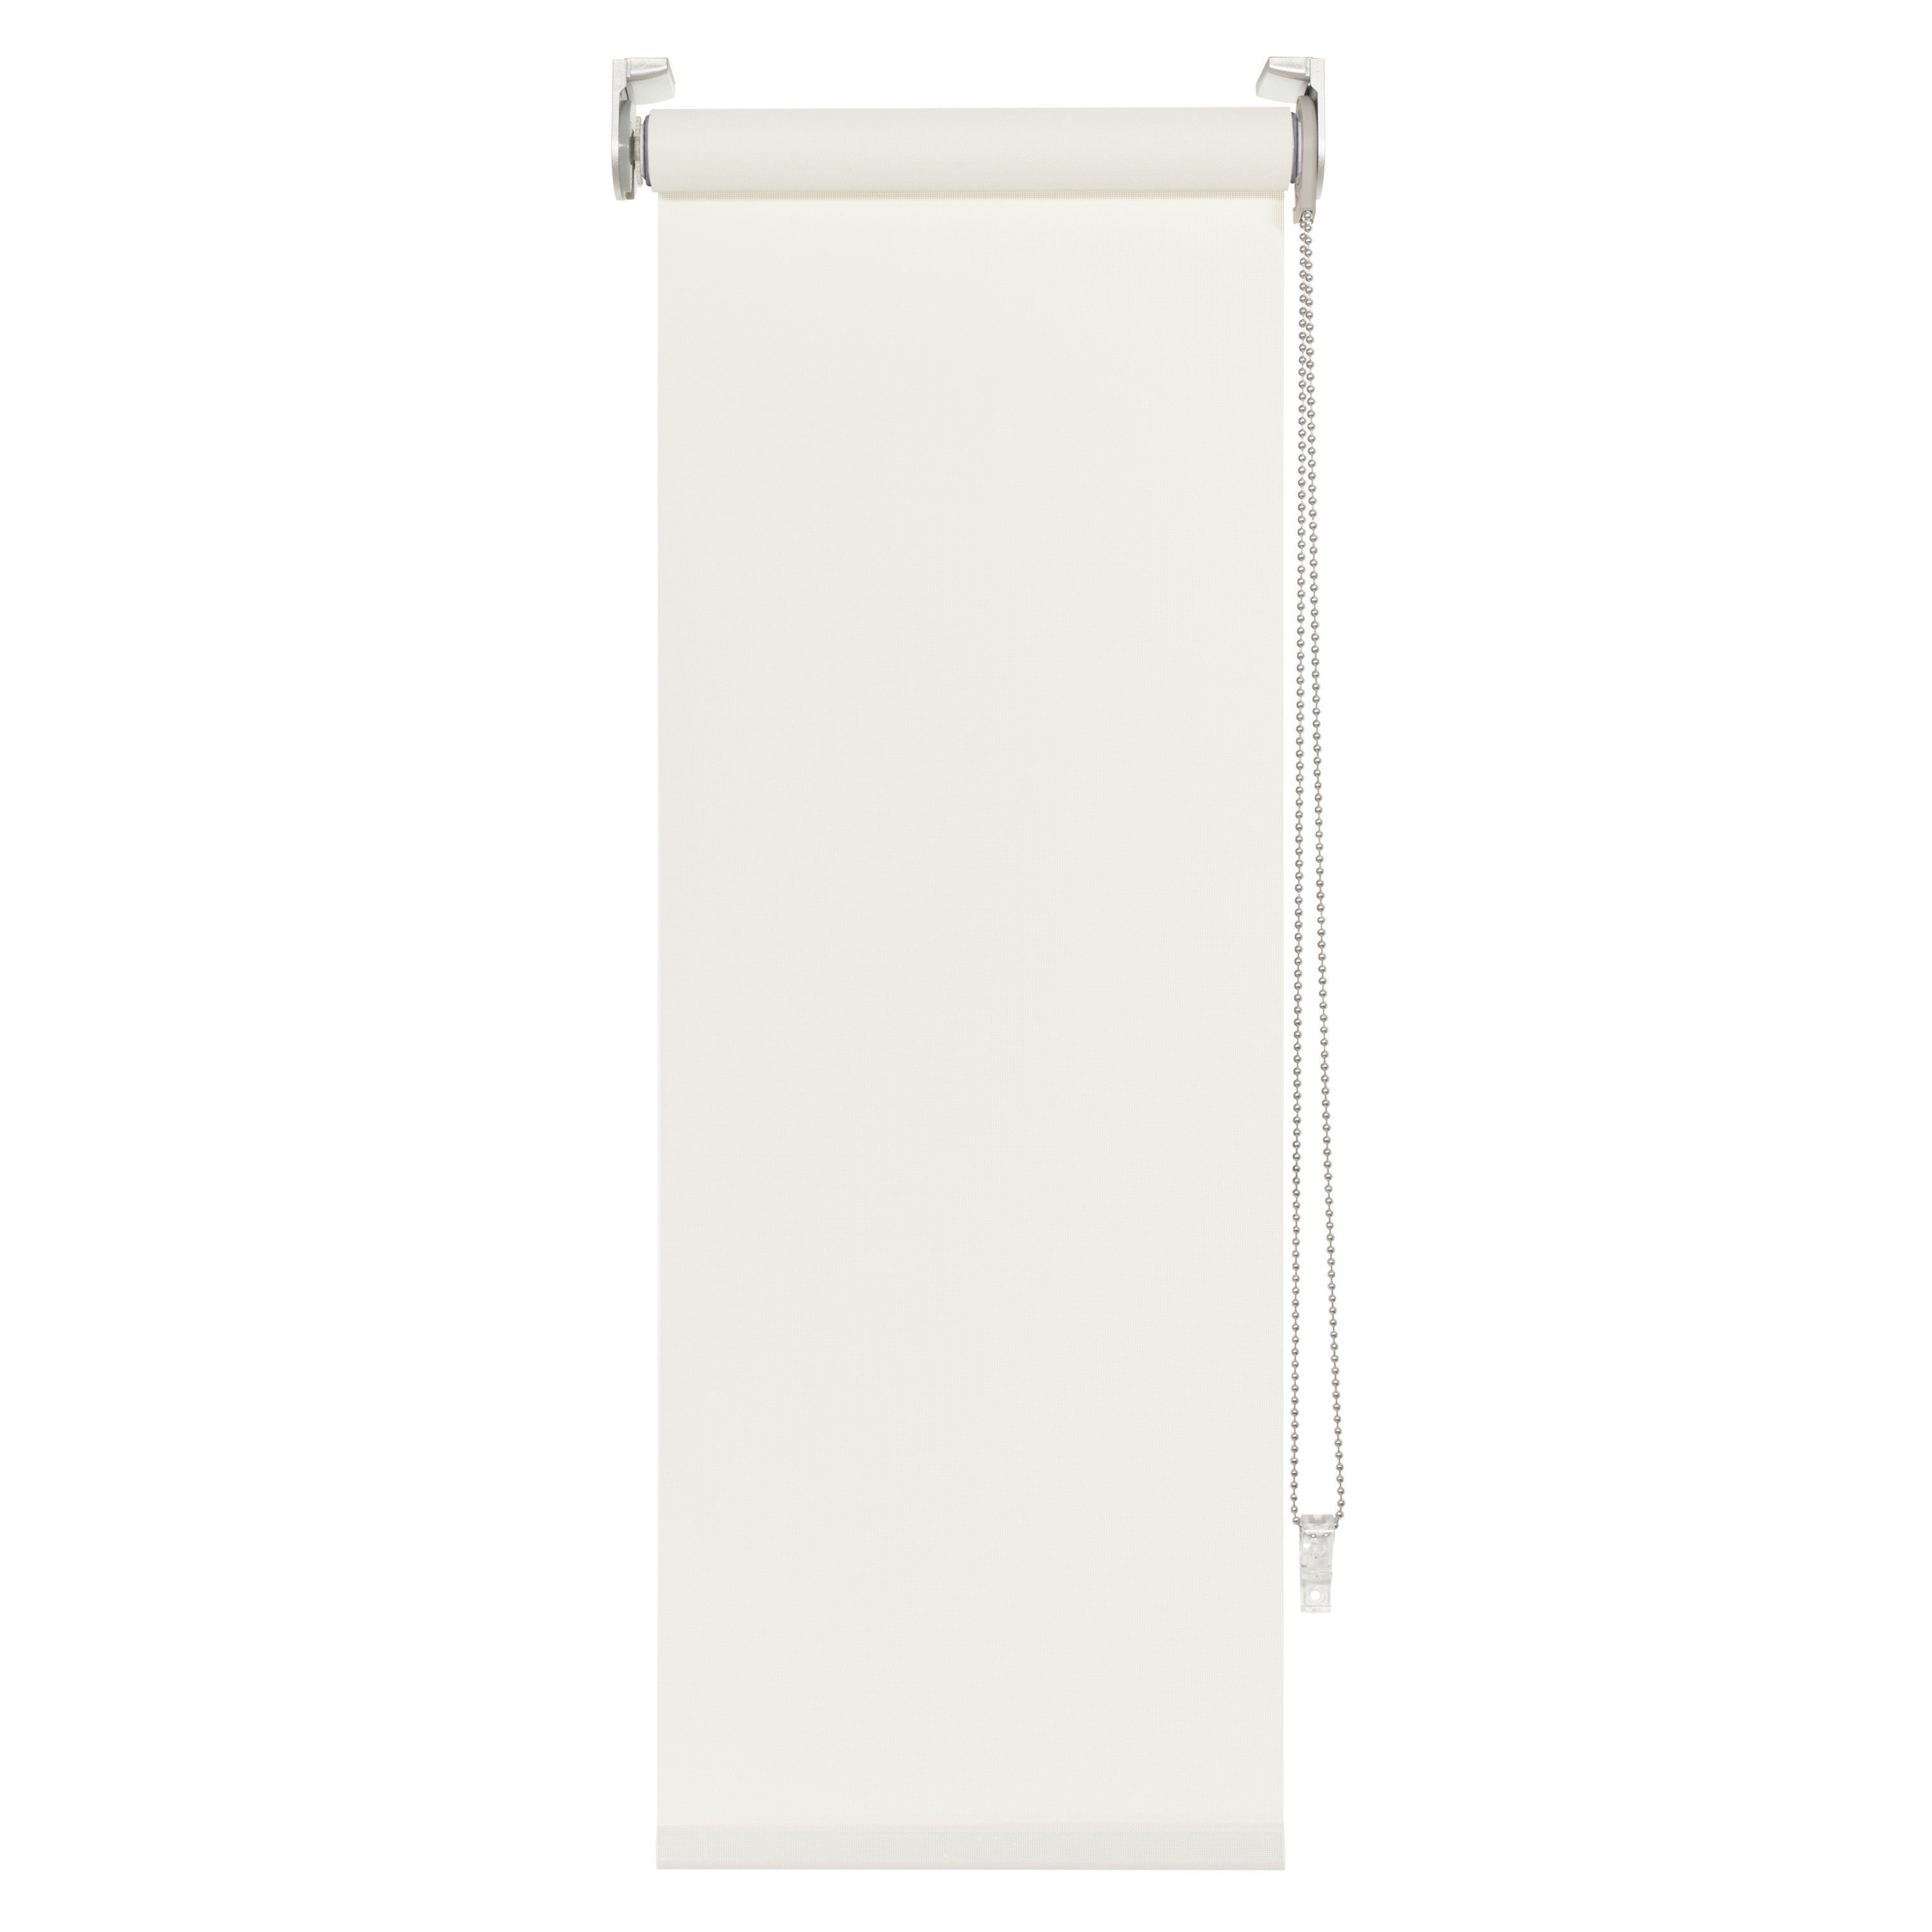 Tenda a rullo filtrante INSPIRE Brasilia bianco 105 x 250 cm - 5